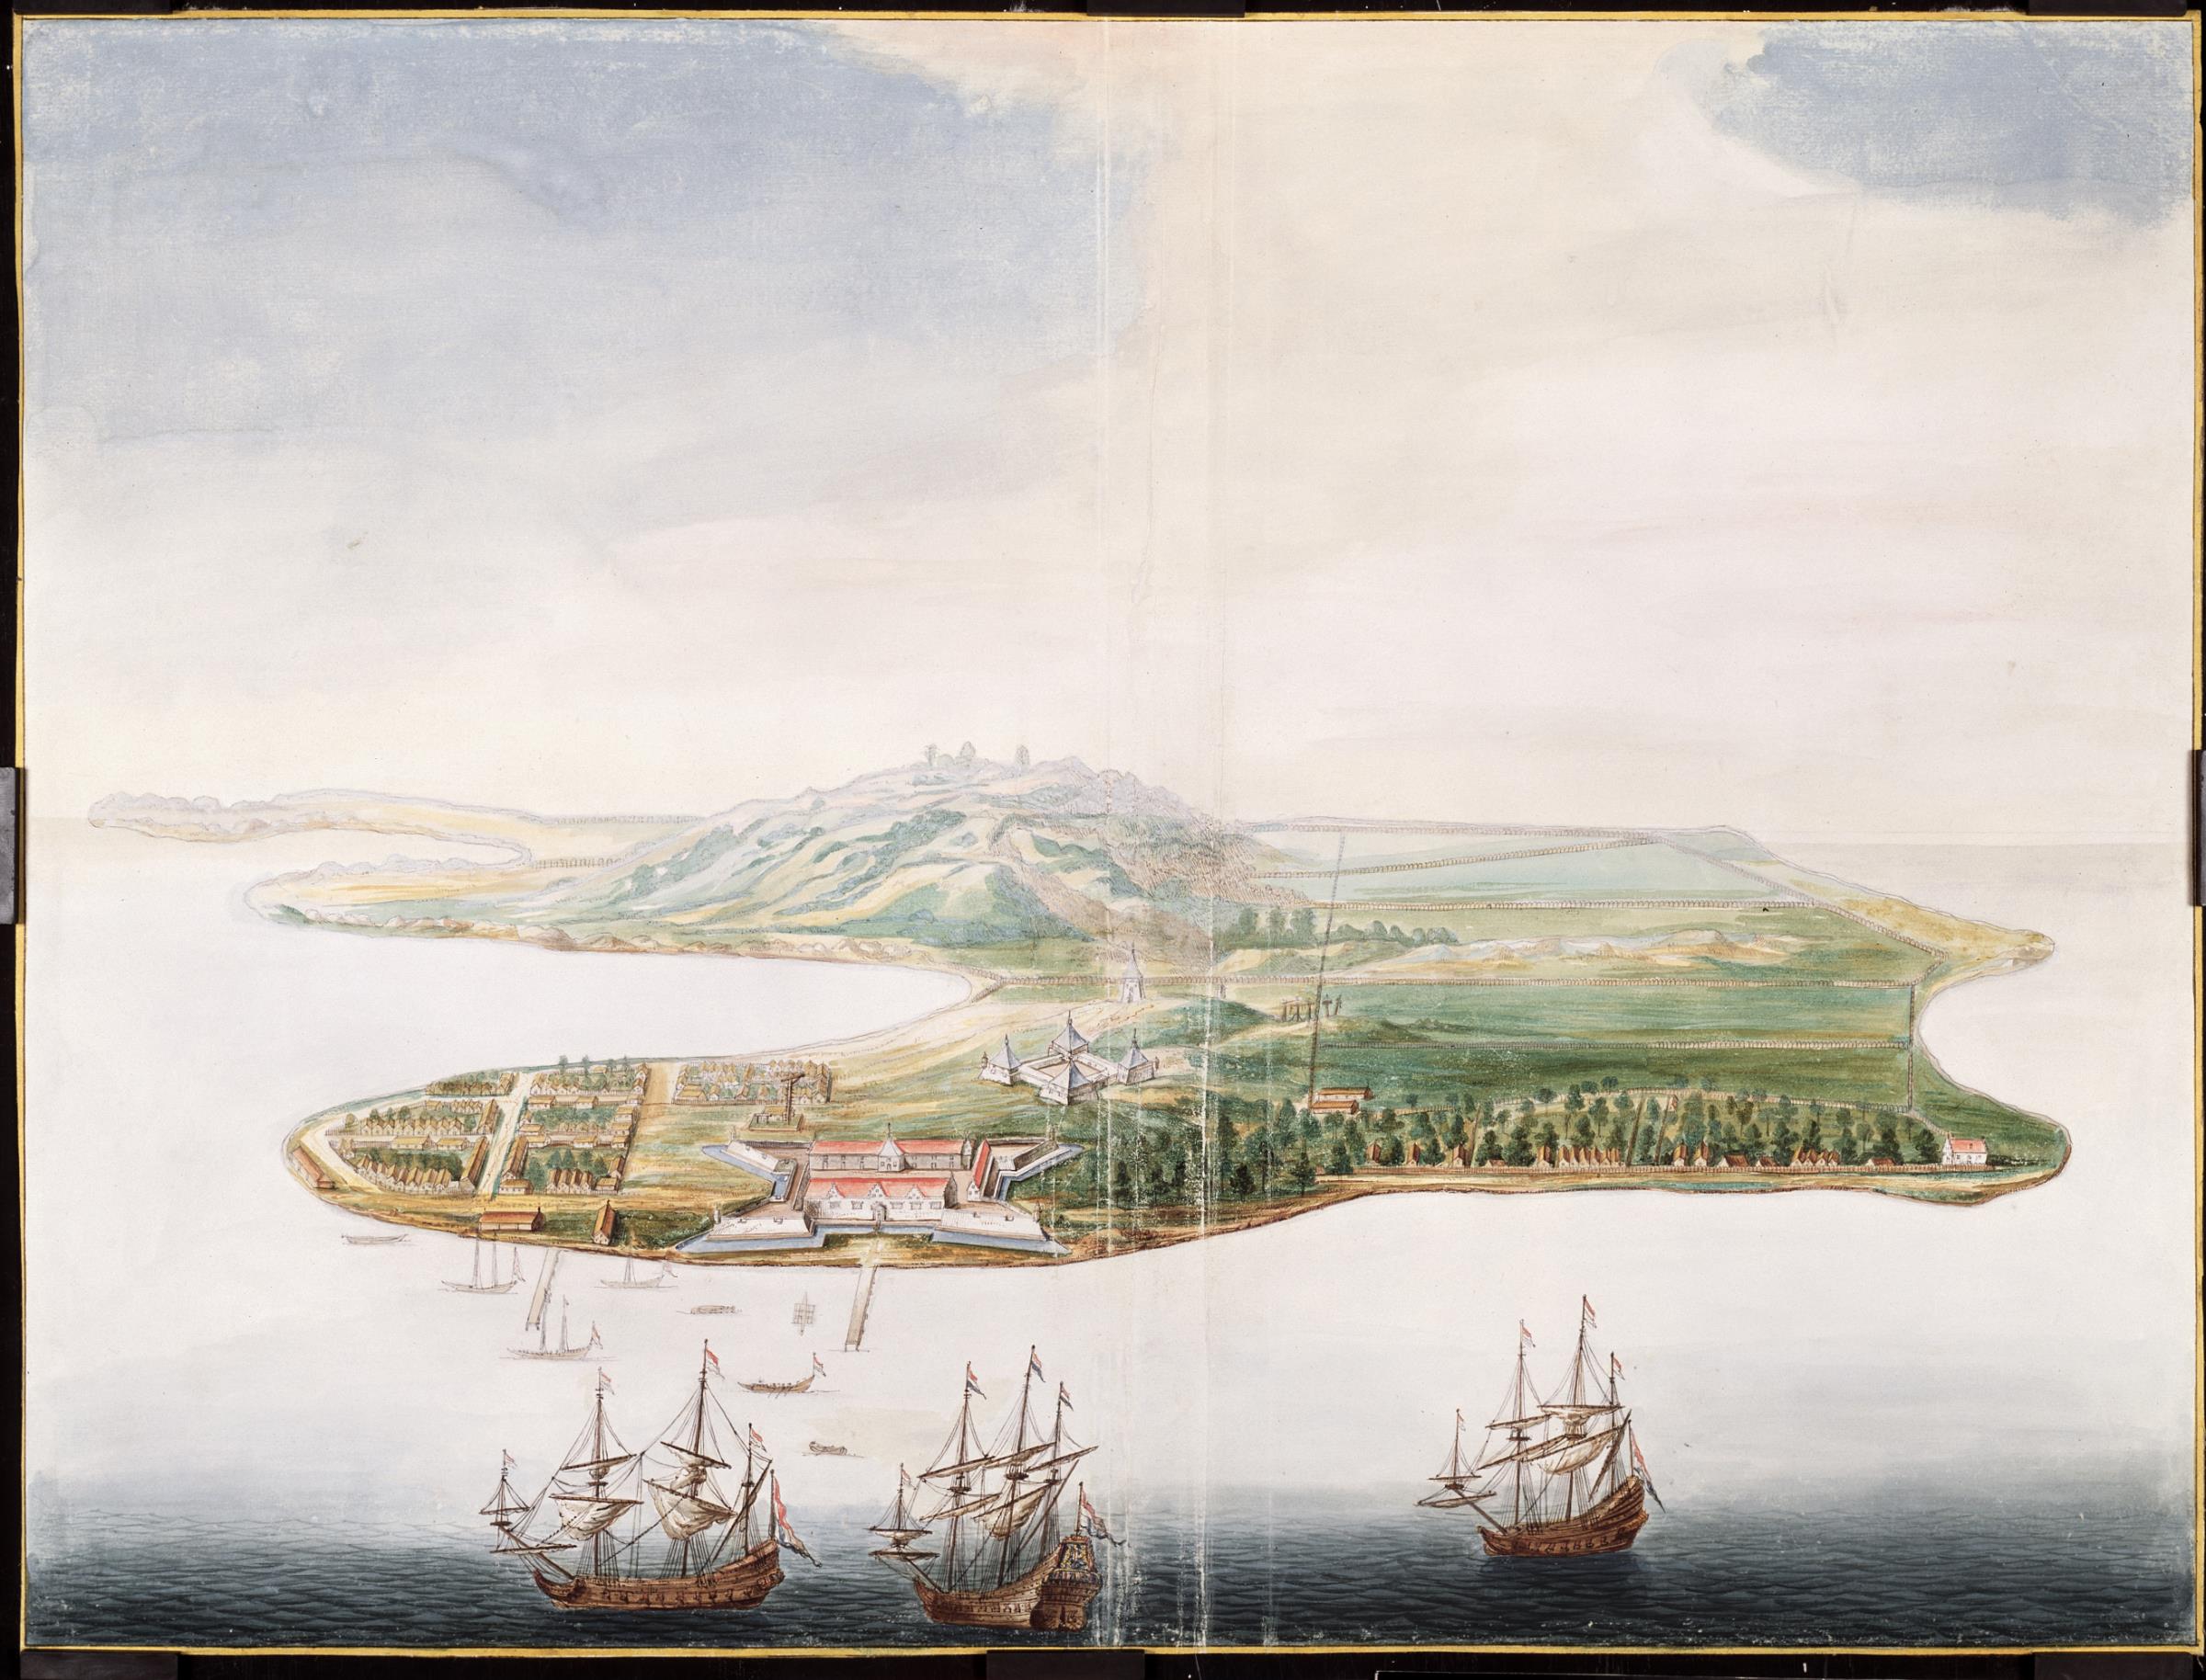 Ilustrasi Pulau Bandanaira, pulau utama di gugusan Kepulauan Banda pada abad ke-17. Terlihat desa Naira dan benteng Nassau milik Belanda di pesisir pulau, serta benteng Belgica di belakangnya. Pala adalah komoditas utama dari Kepulauan Banda dan diperebutkan oleh pedagang-pedagang Inggris dan Belanda.